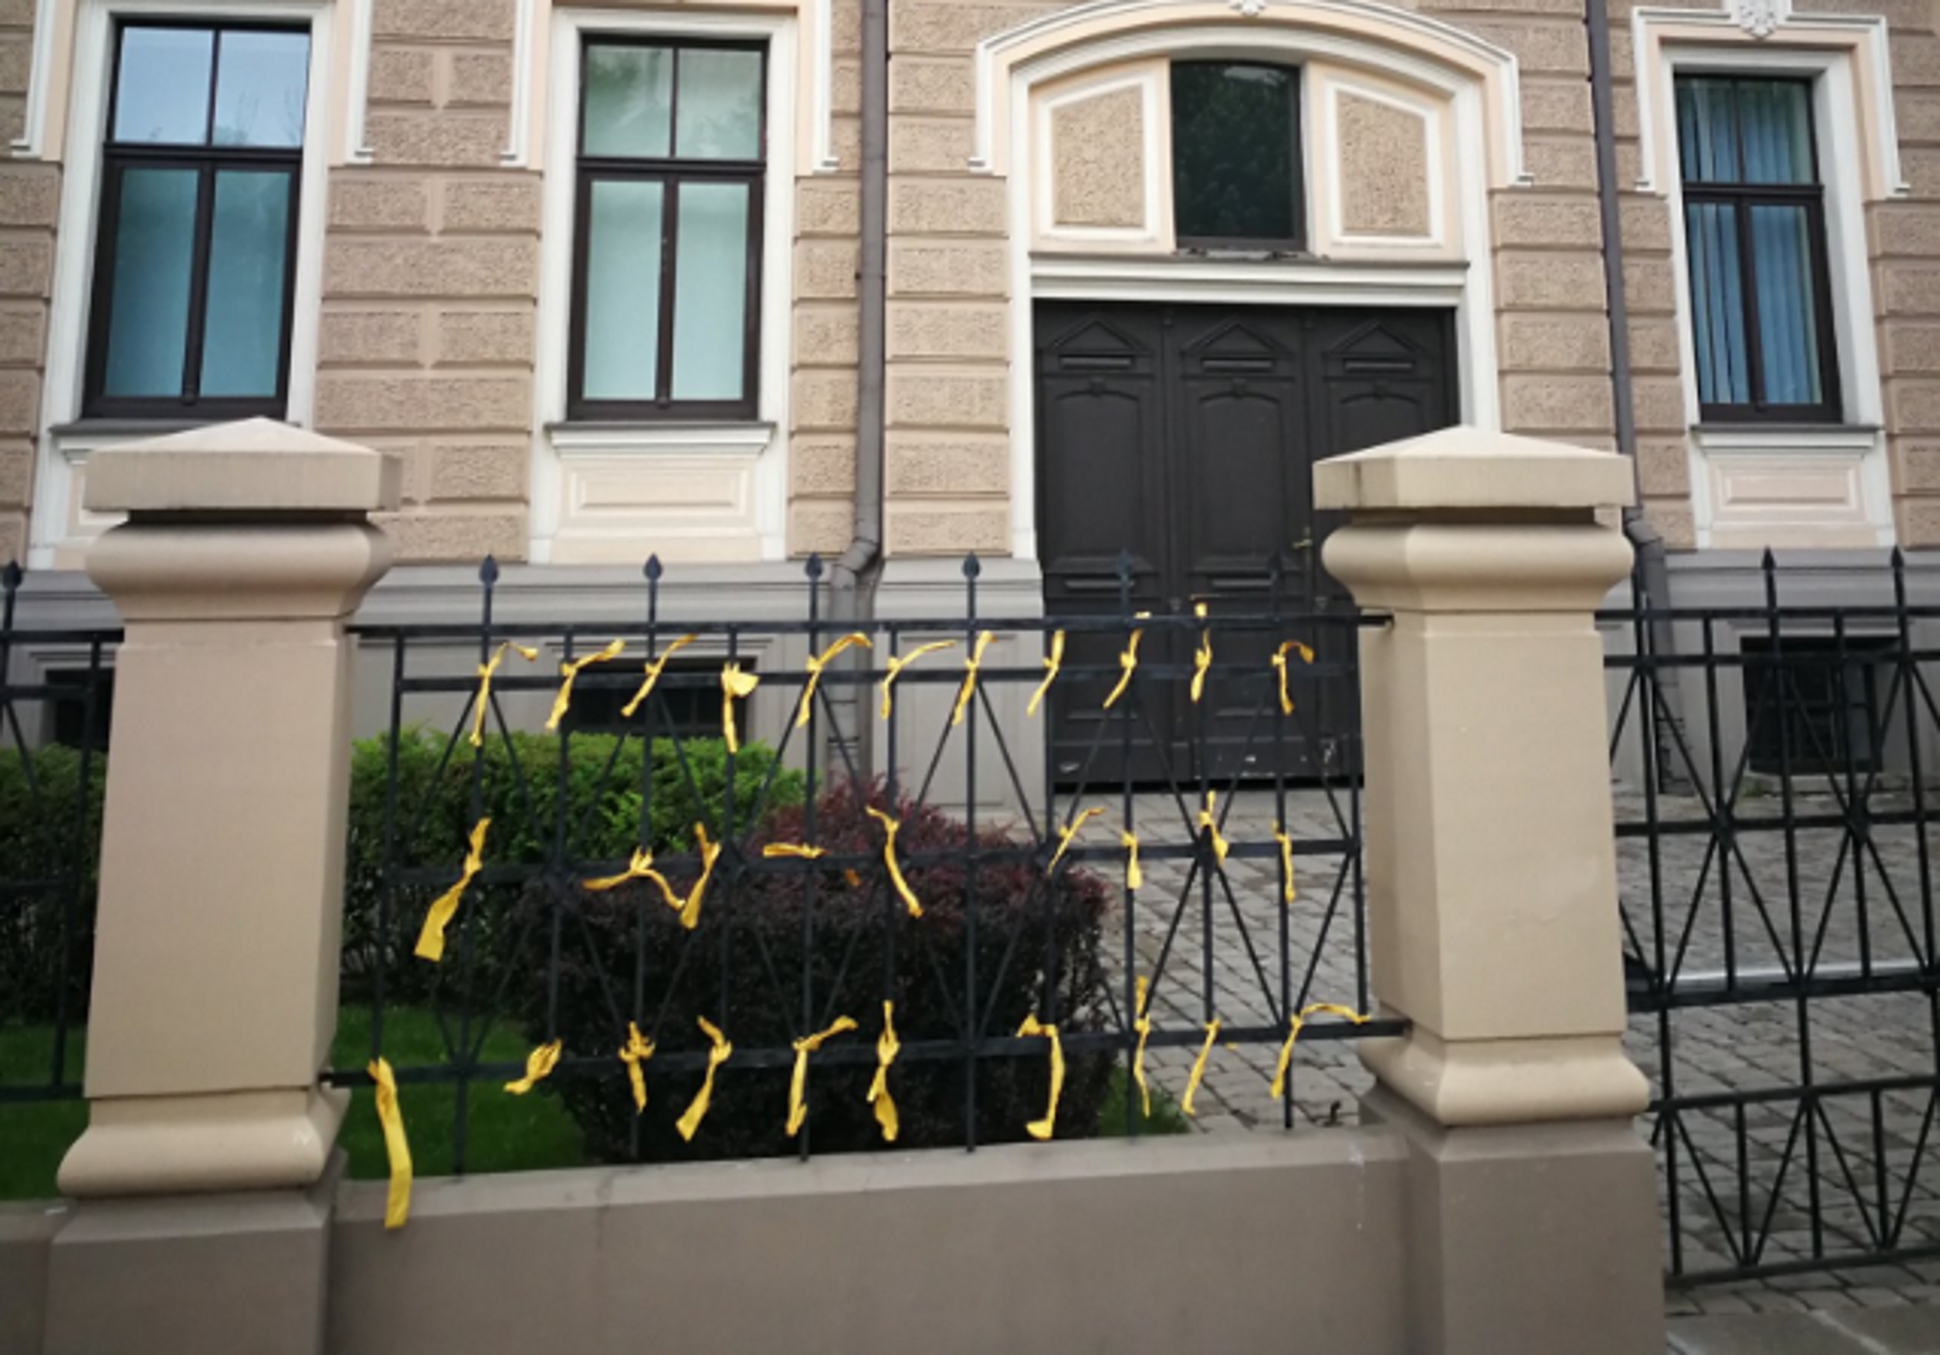 Apareixen llaços grocs a l'ambaixada espanyola a Letònia